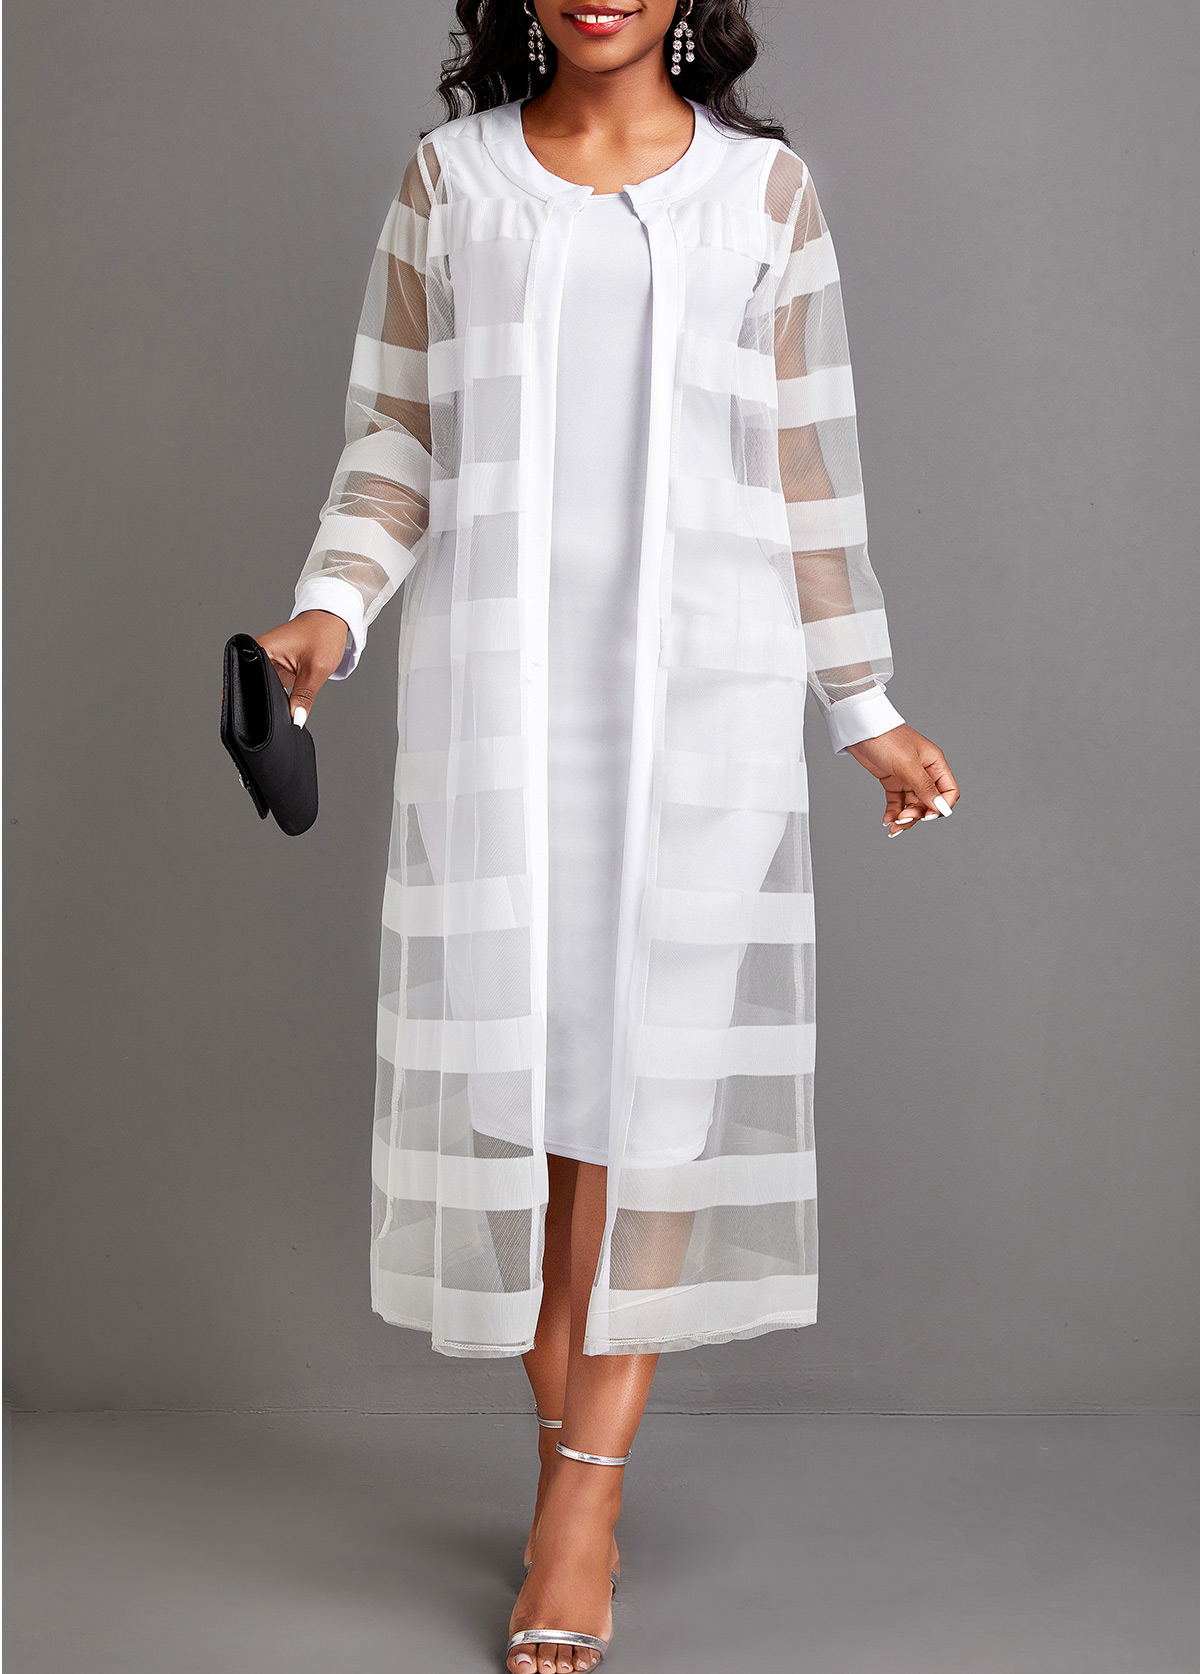 Rotita zweiteiliges langärmliges weißes Kleid und Strickjacke